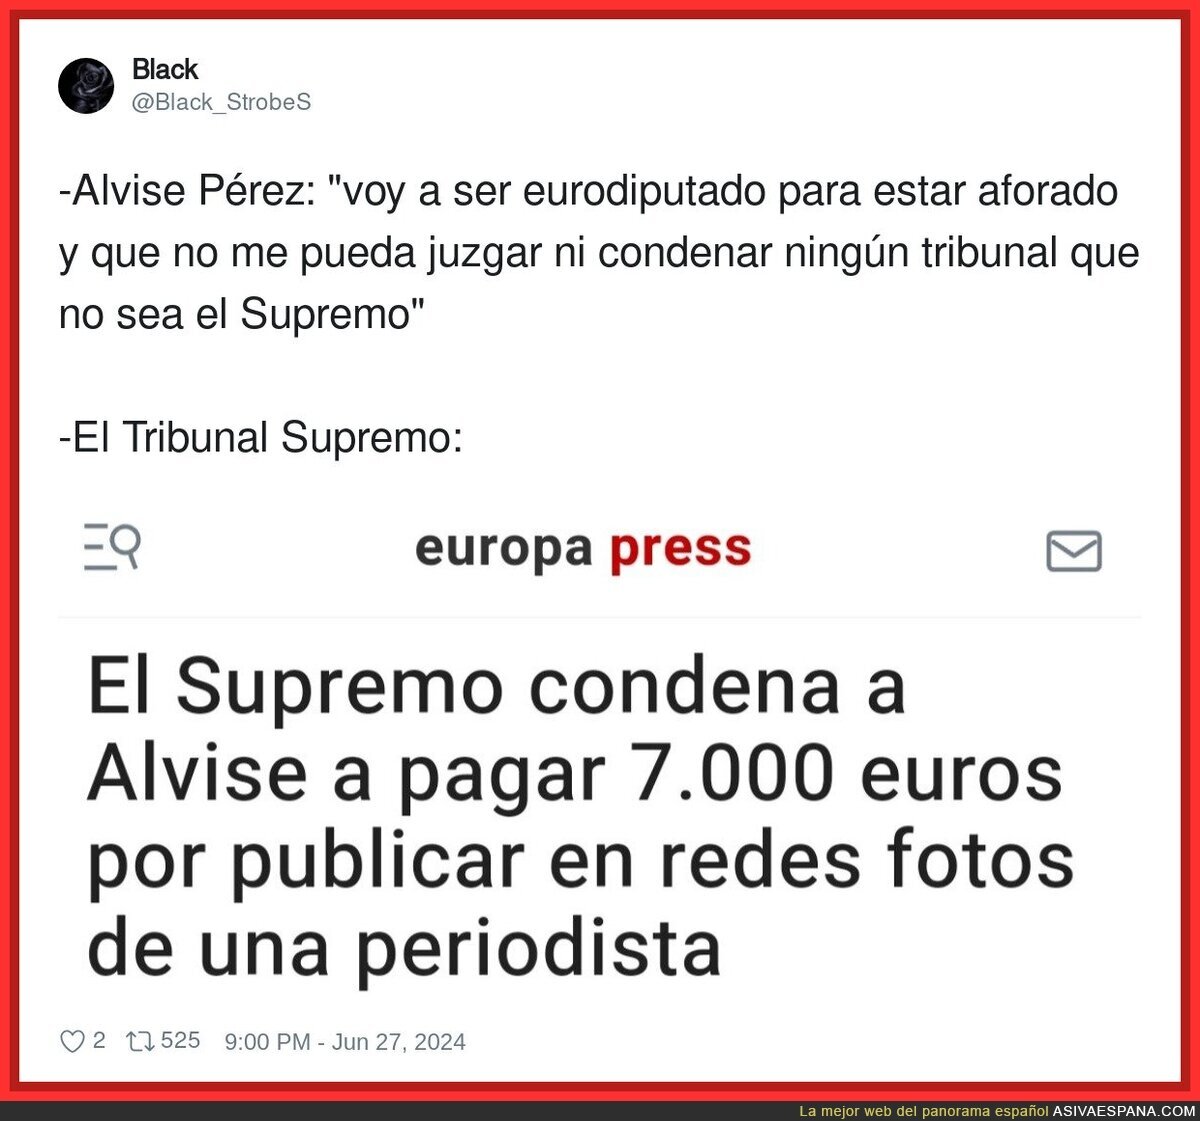 Primera condena a Alvise Pérez tras ser eurodiputado